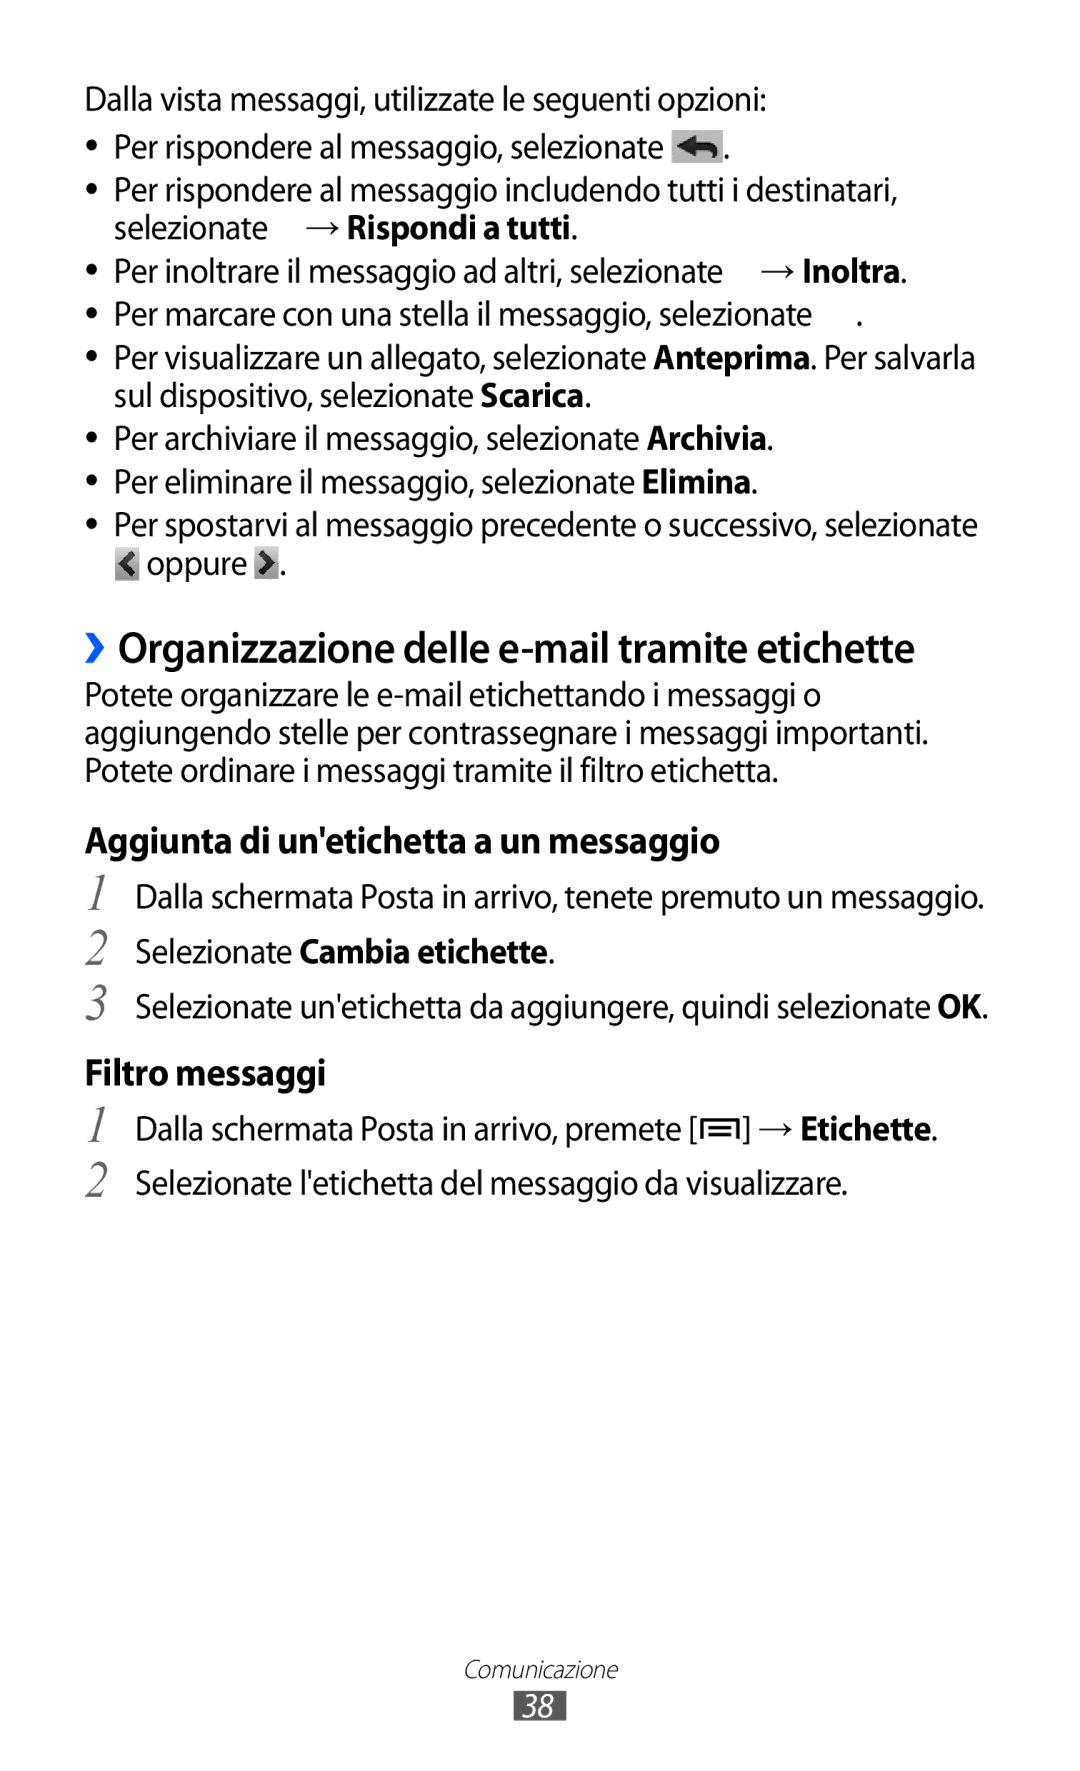 Samsung YP-GI1CW/XET, YP-G1CW/XEG ››Organizzazione delle e-mail tramite etichette, Aggiunta di unetichetta a un messaggio 